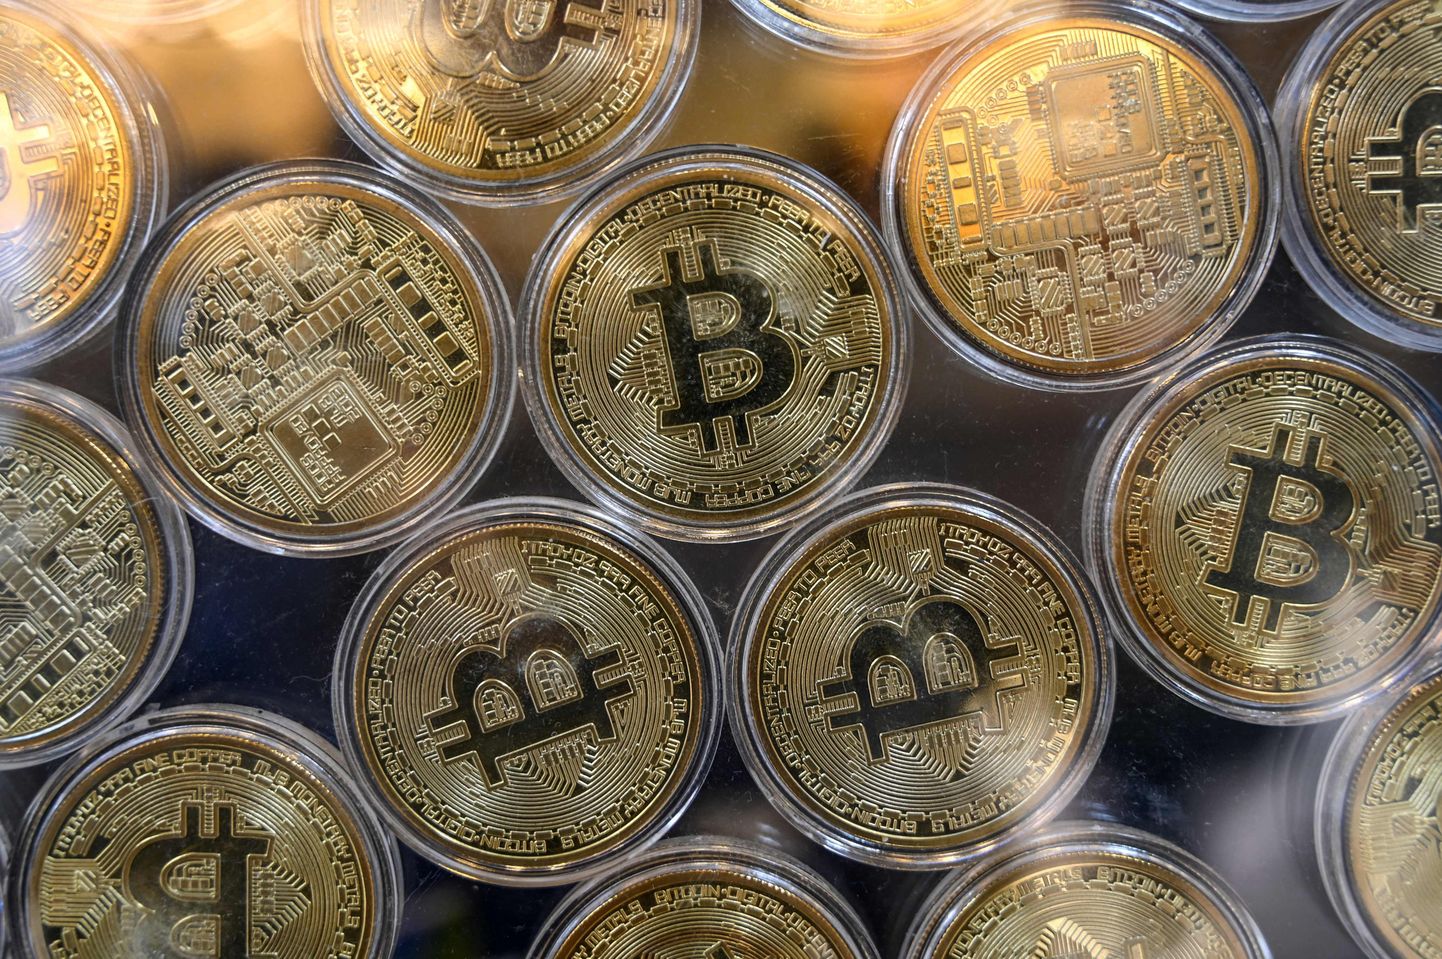 Bitcoini tähisega mündid